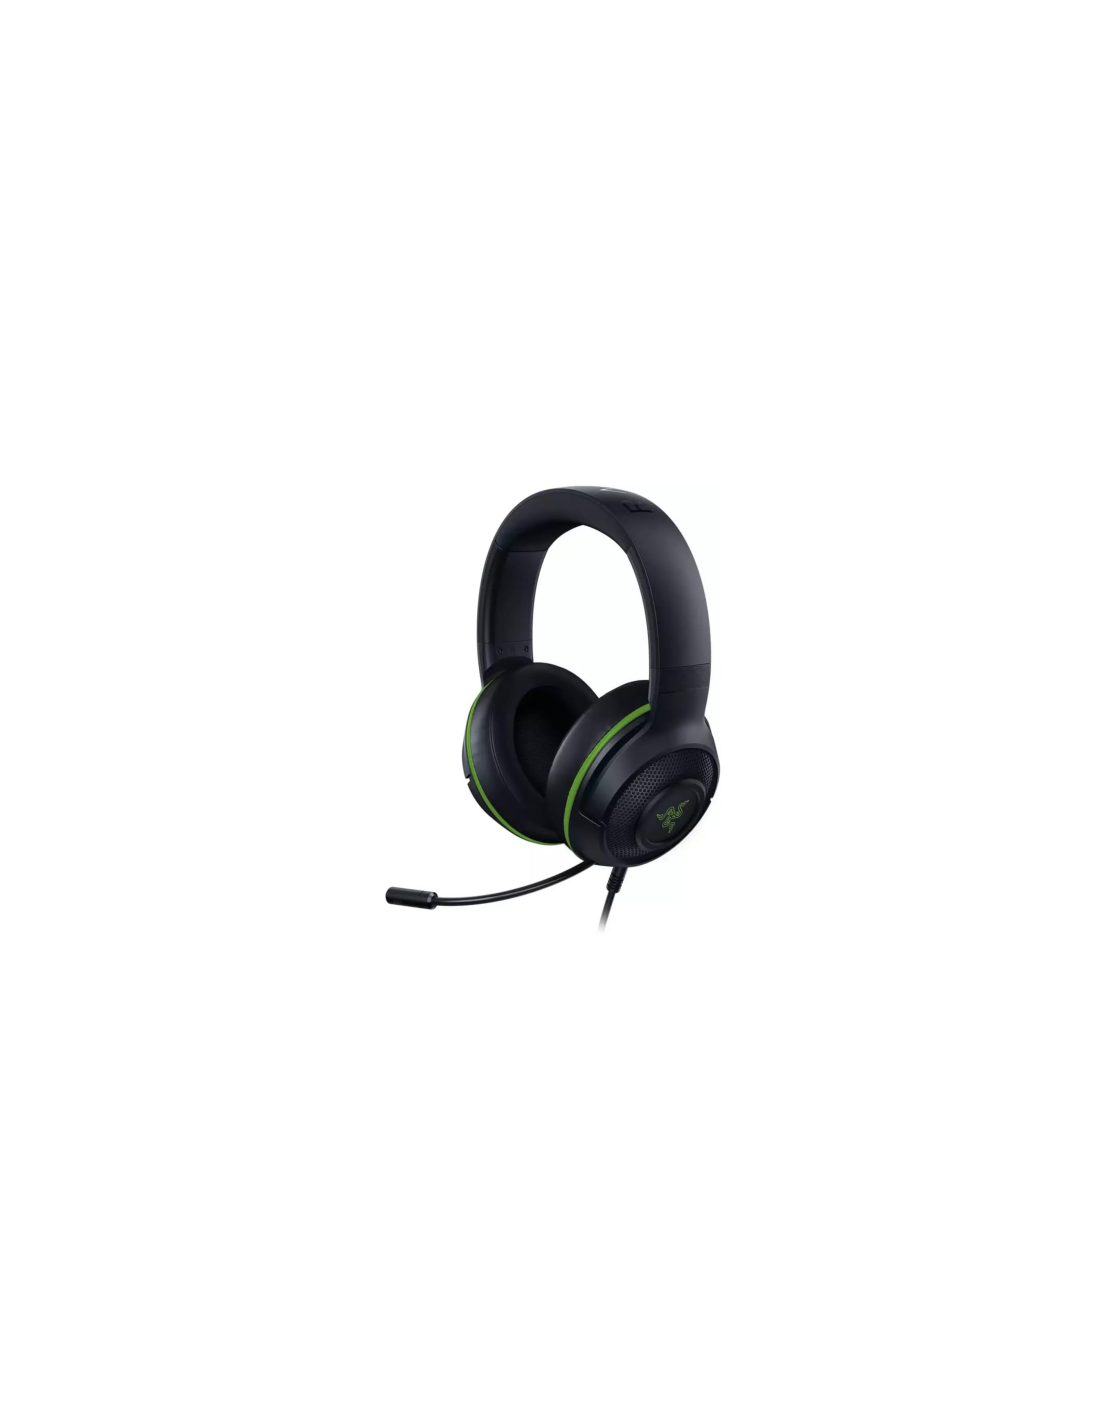 Razer Kraken Pro V2 Verde - Comprar auriculares gaming